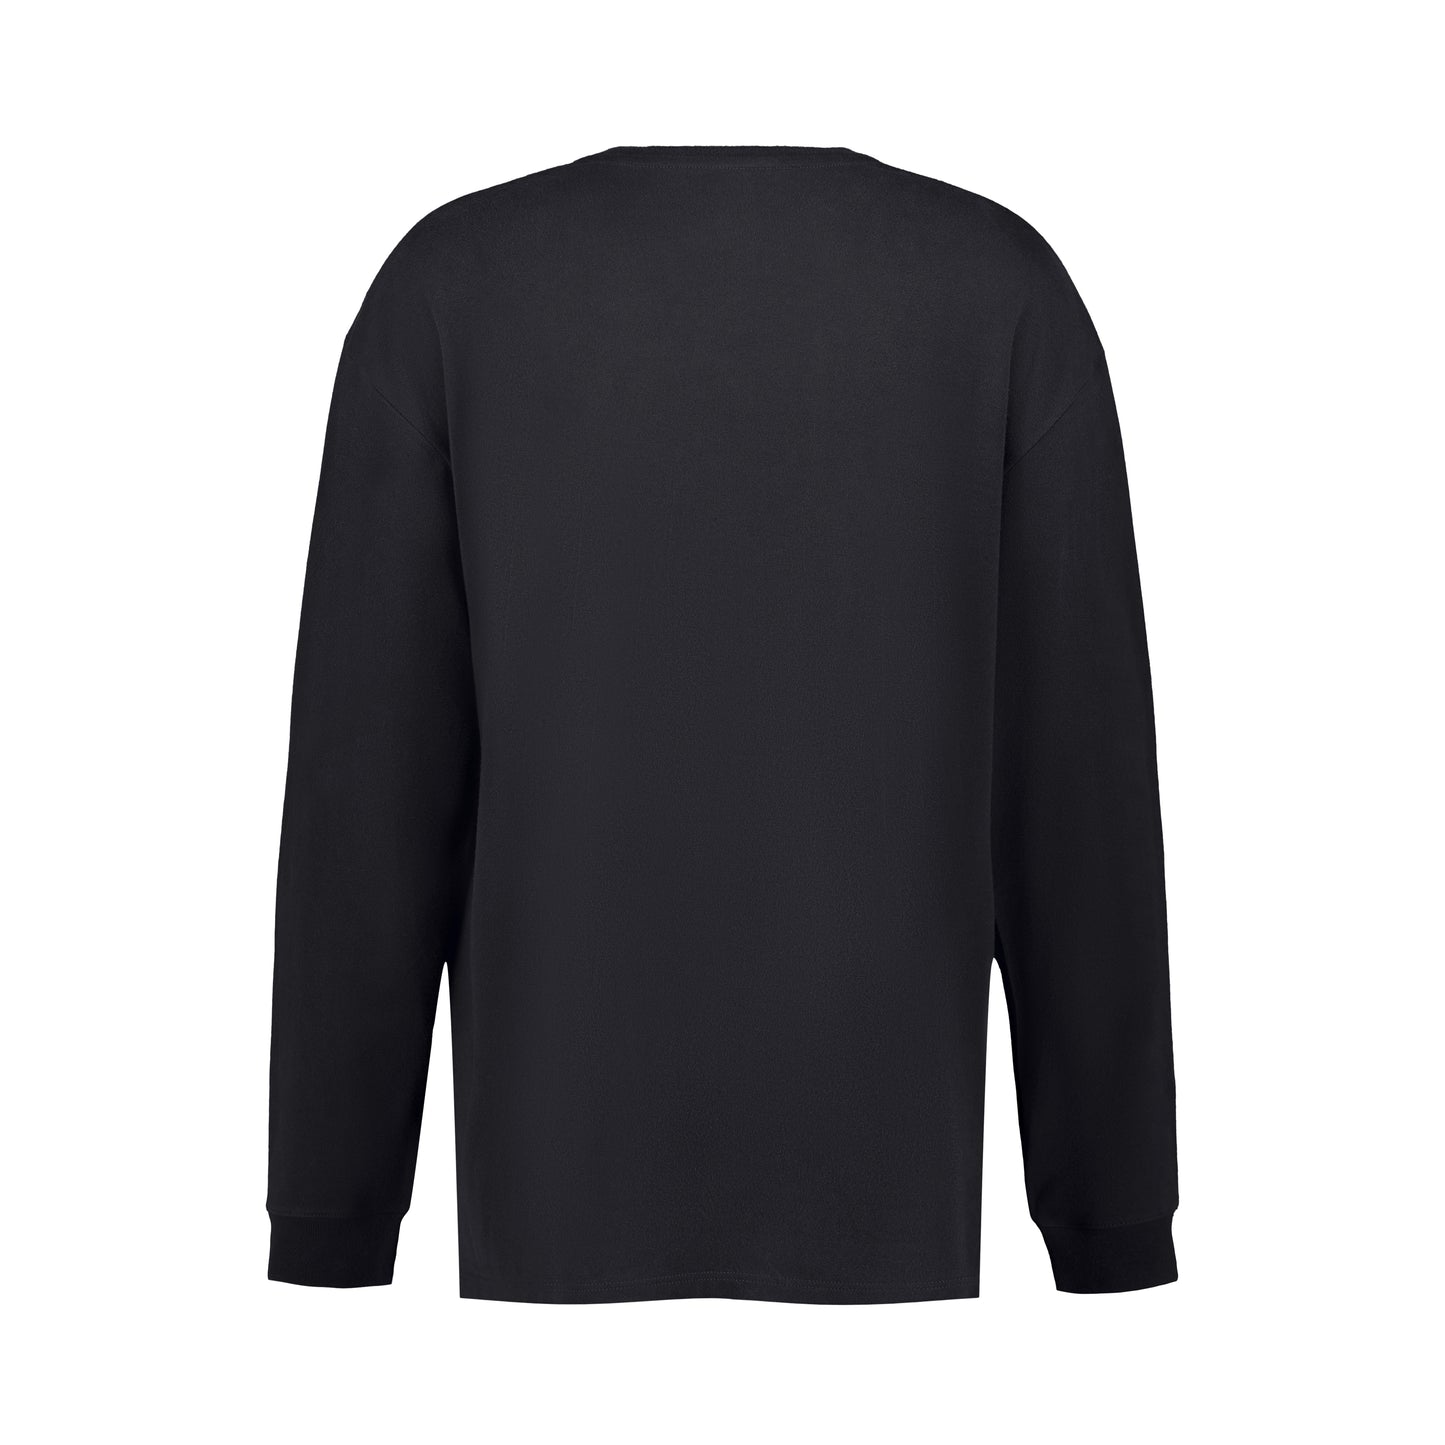 Robert Long Sleeve Cotton T Shirt Black